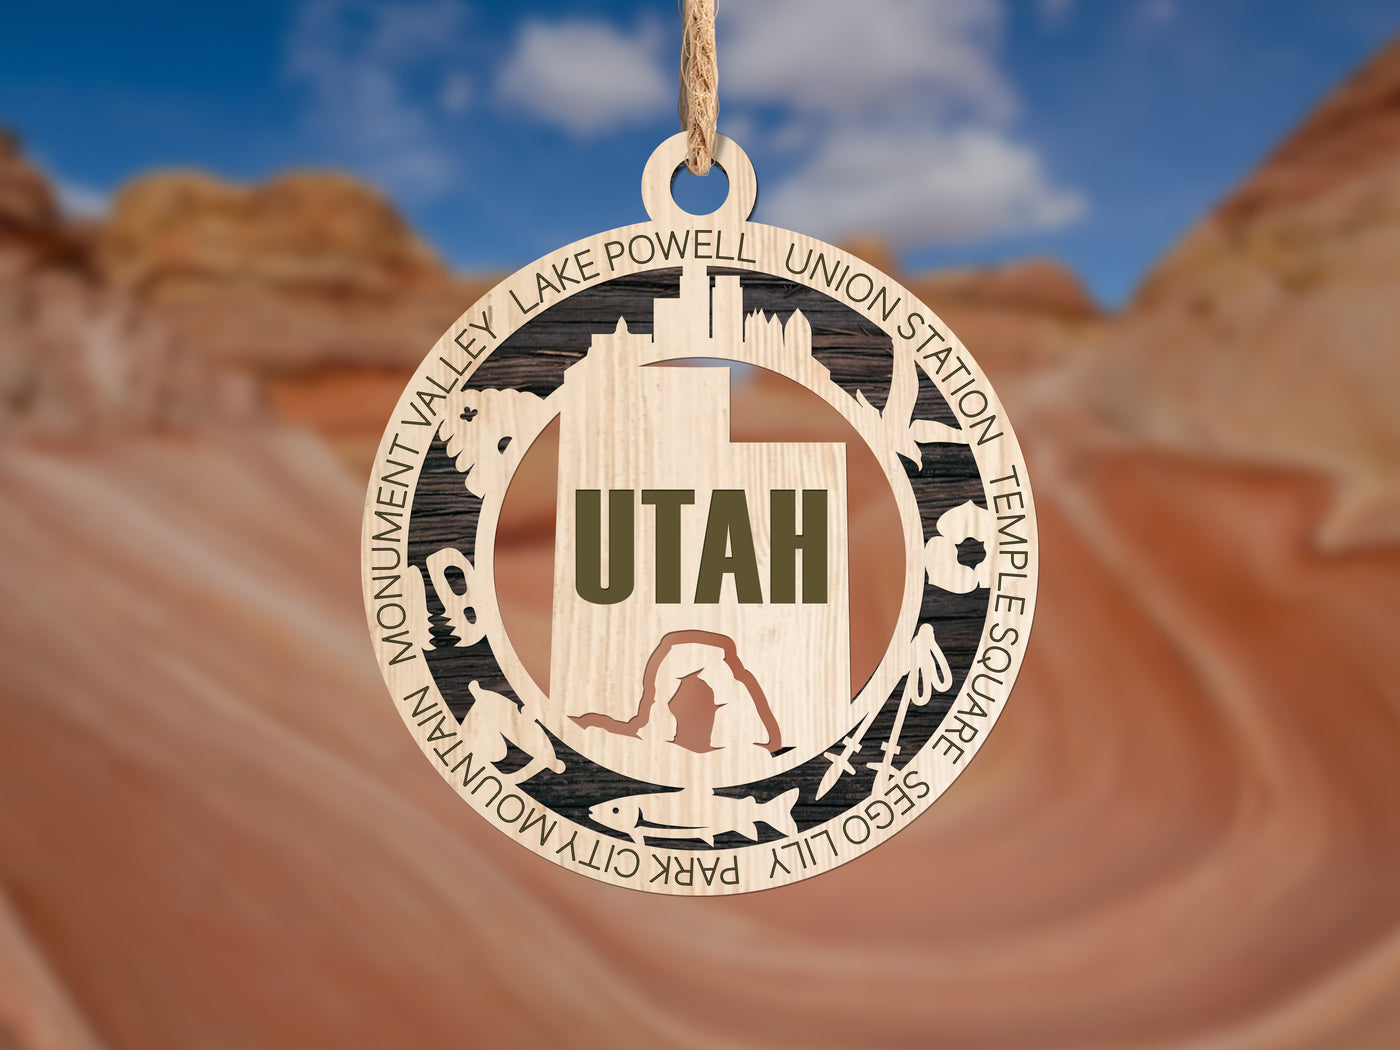 State Ornaments - Utah